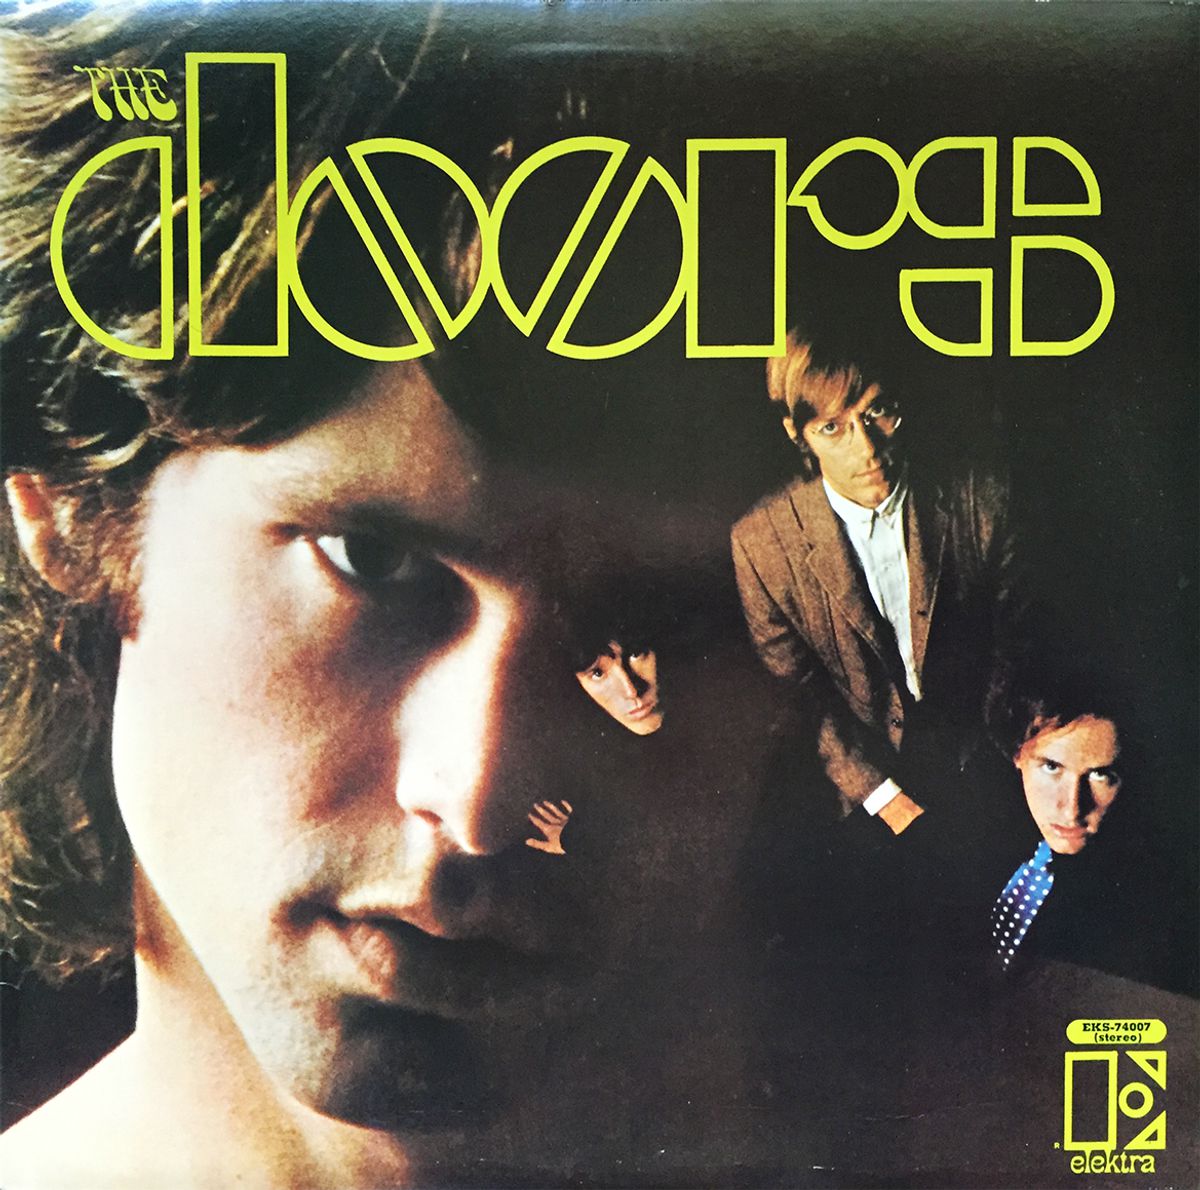 1967: The Doors brengen debuut uit